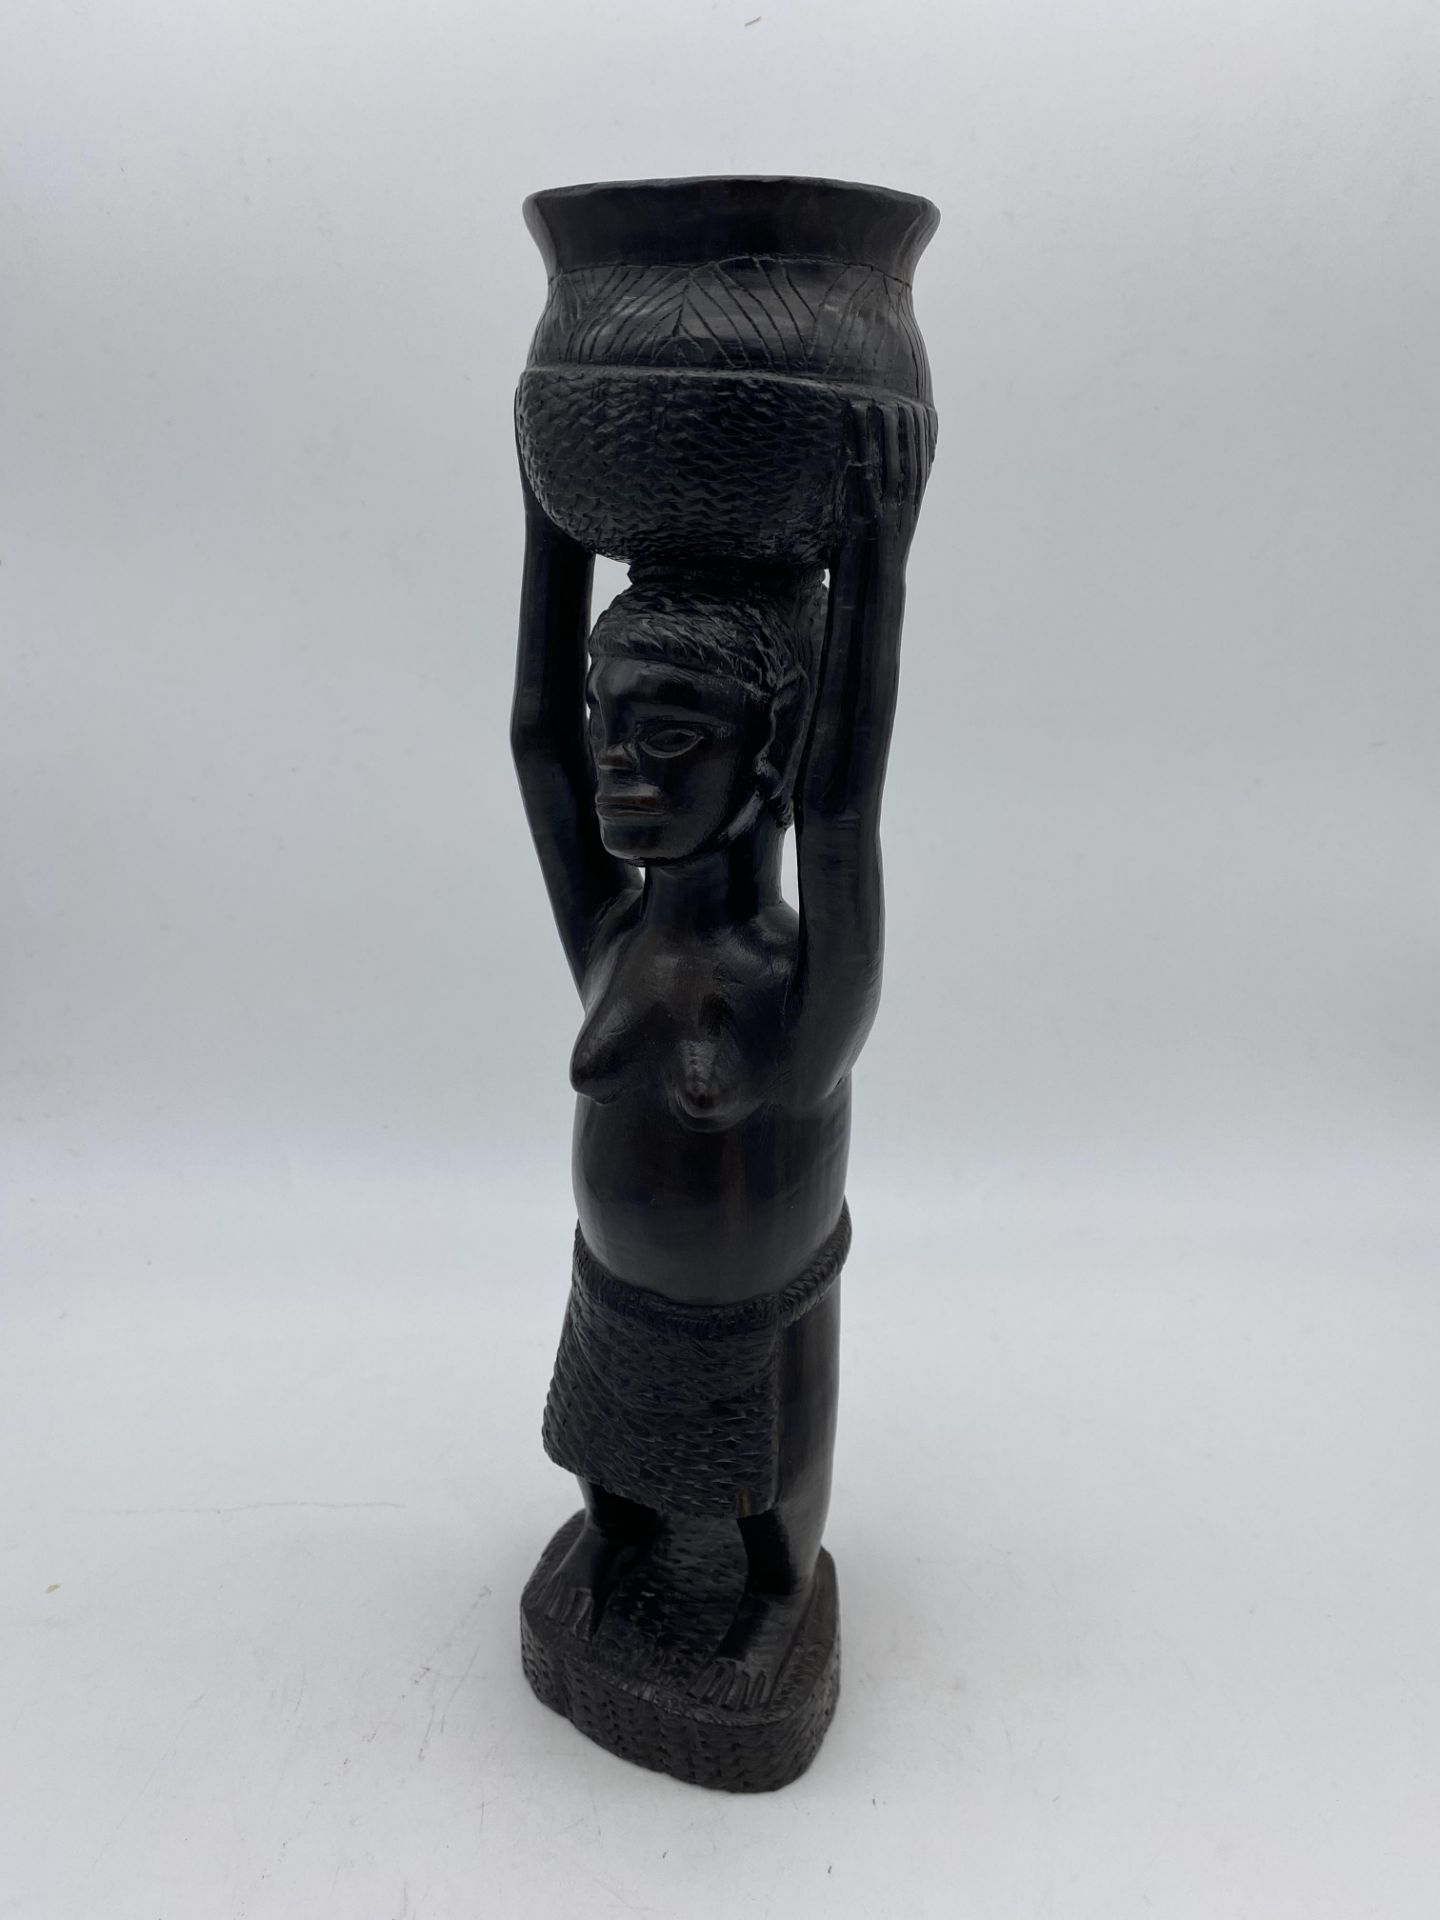 Statuette Africaine en bois - Bild 2 aus 2